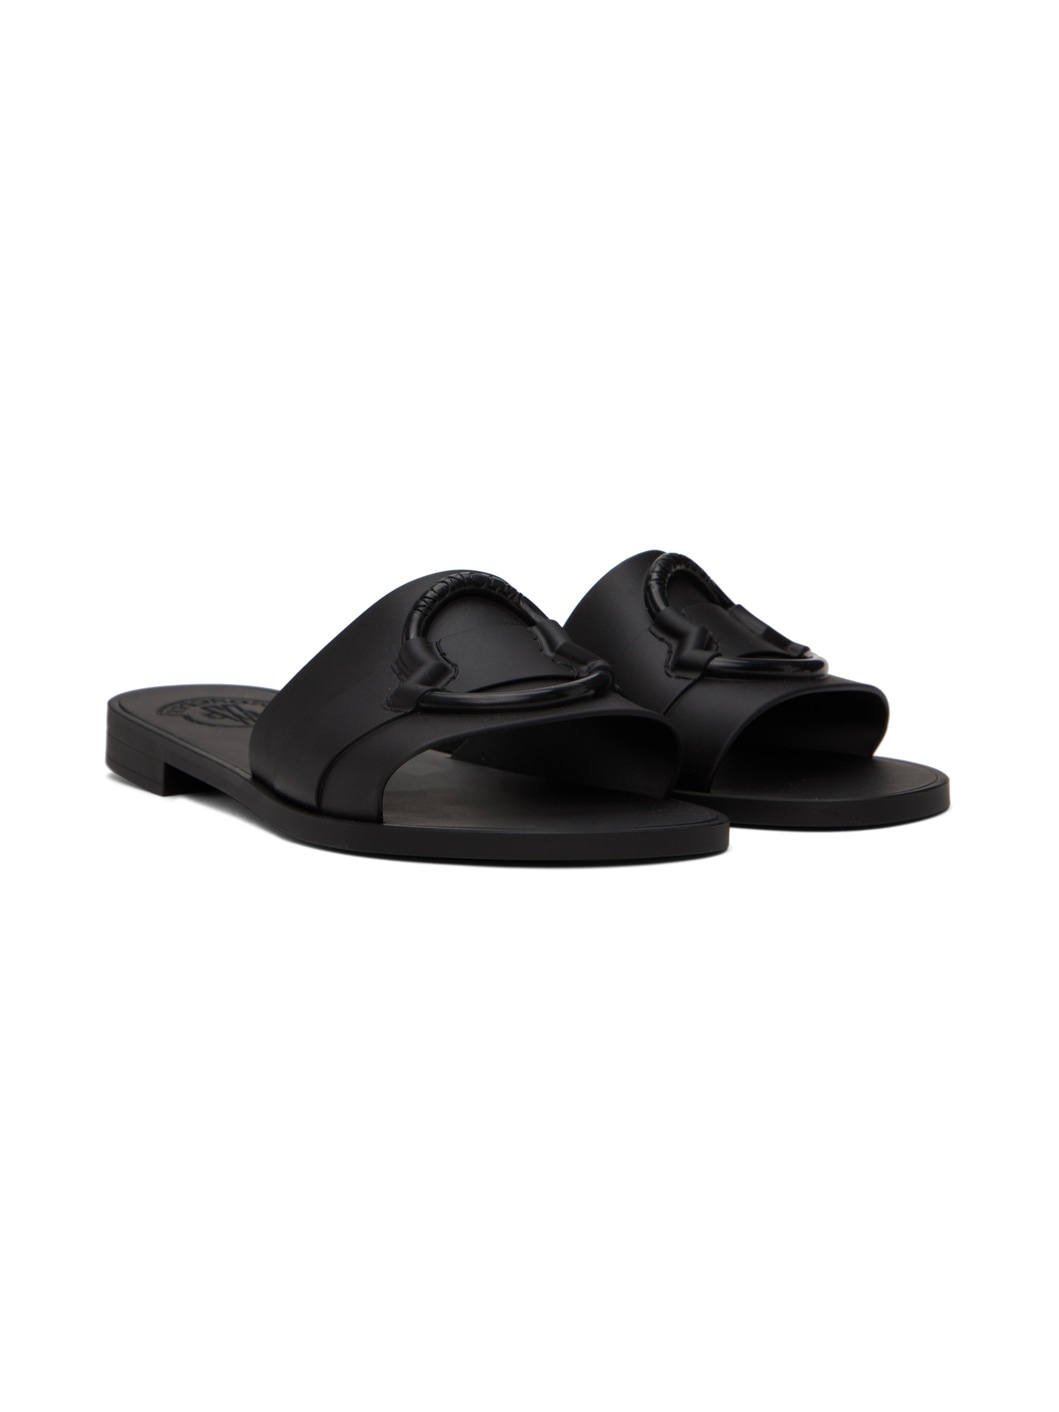 Black Rubber Sandals - 4